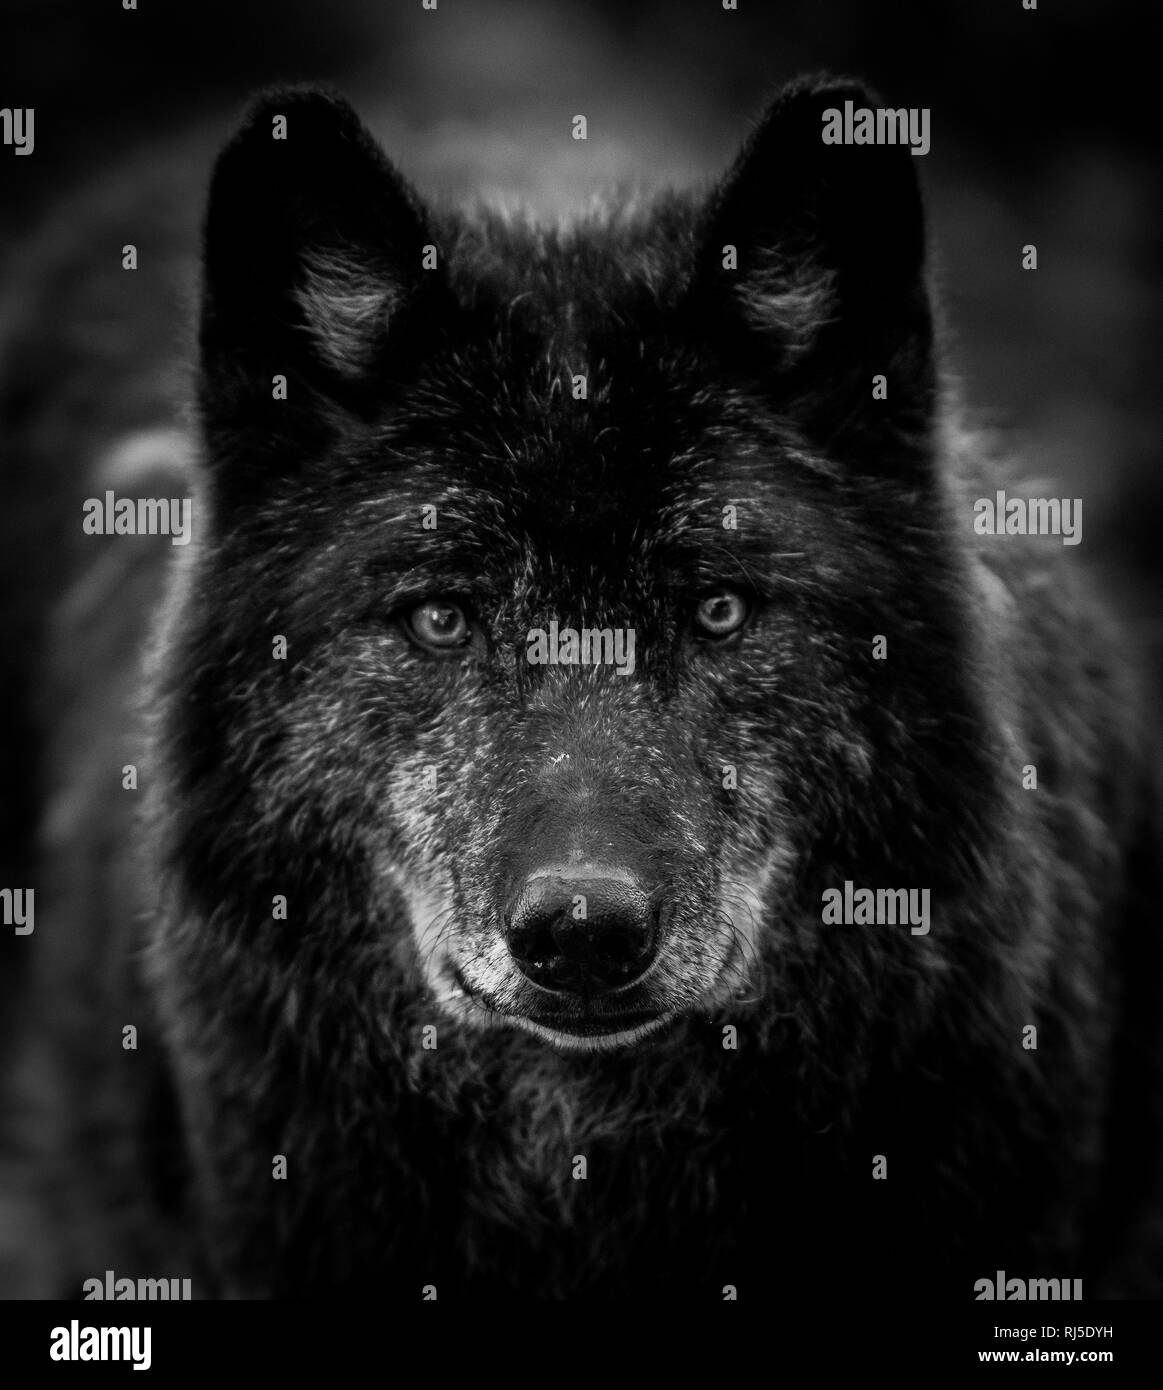 Lobo negro en blanco y negro Fotografía de stock - Alamy